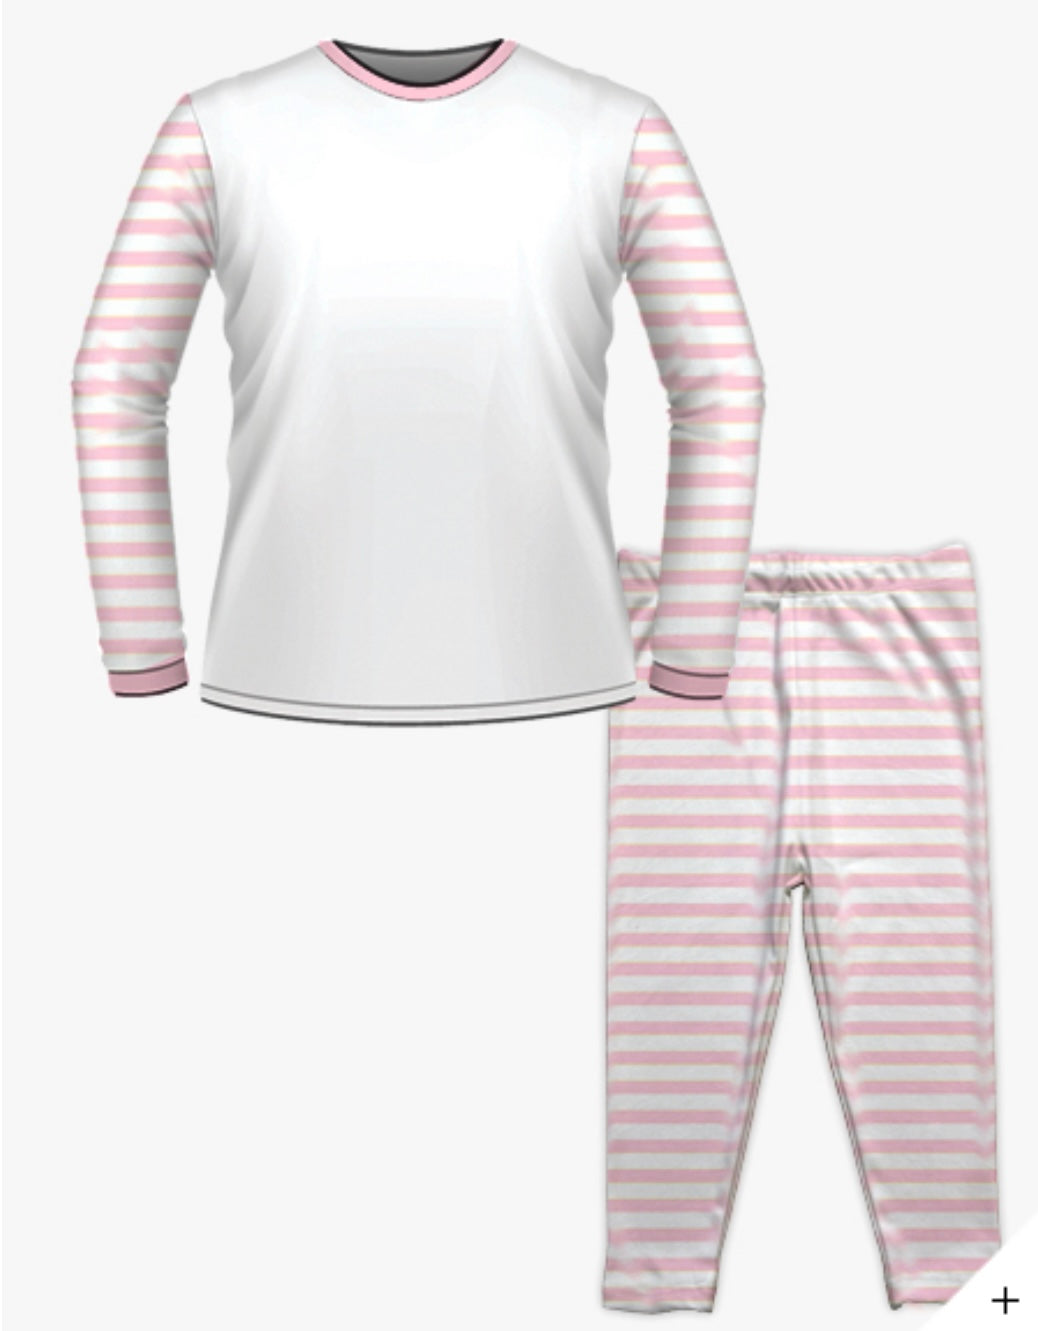 Personalised Birthday Pyjamas - Pink Floral Wreath Design